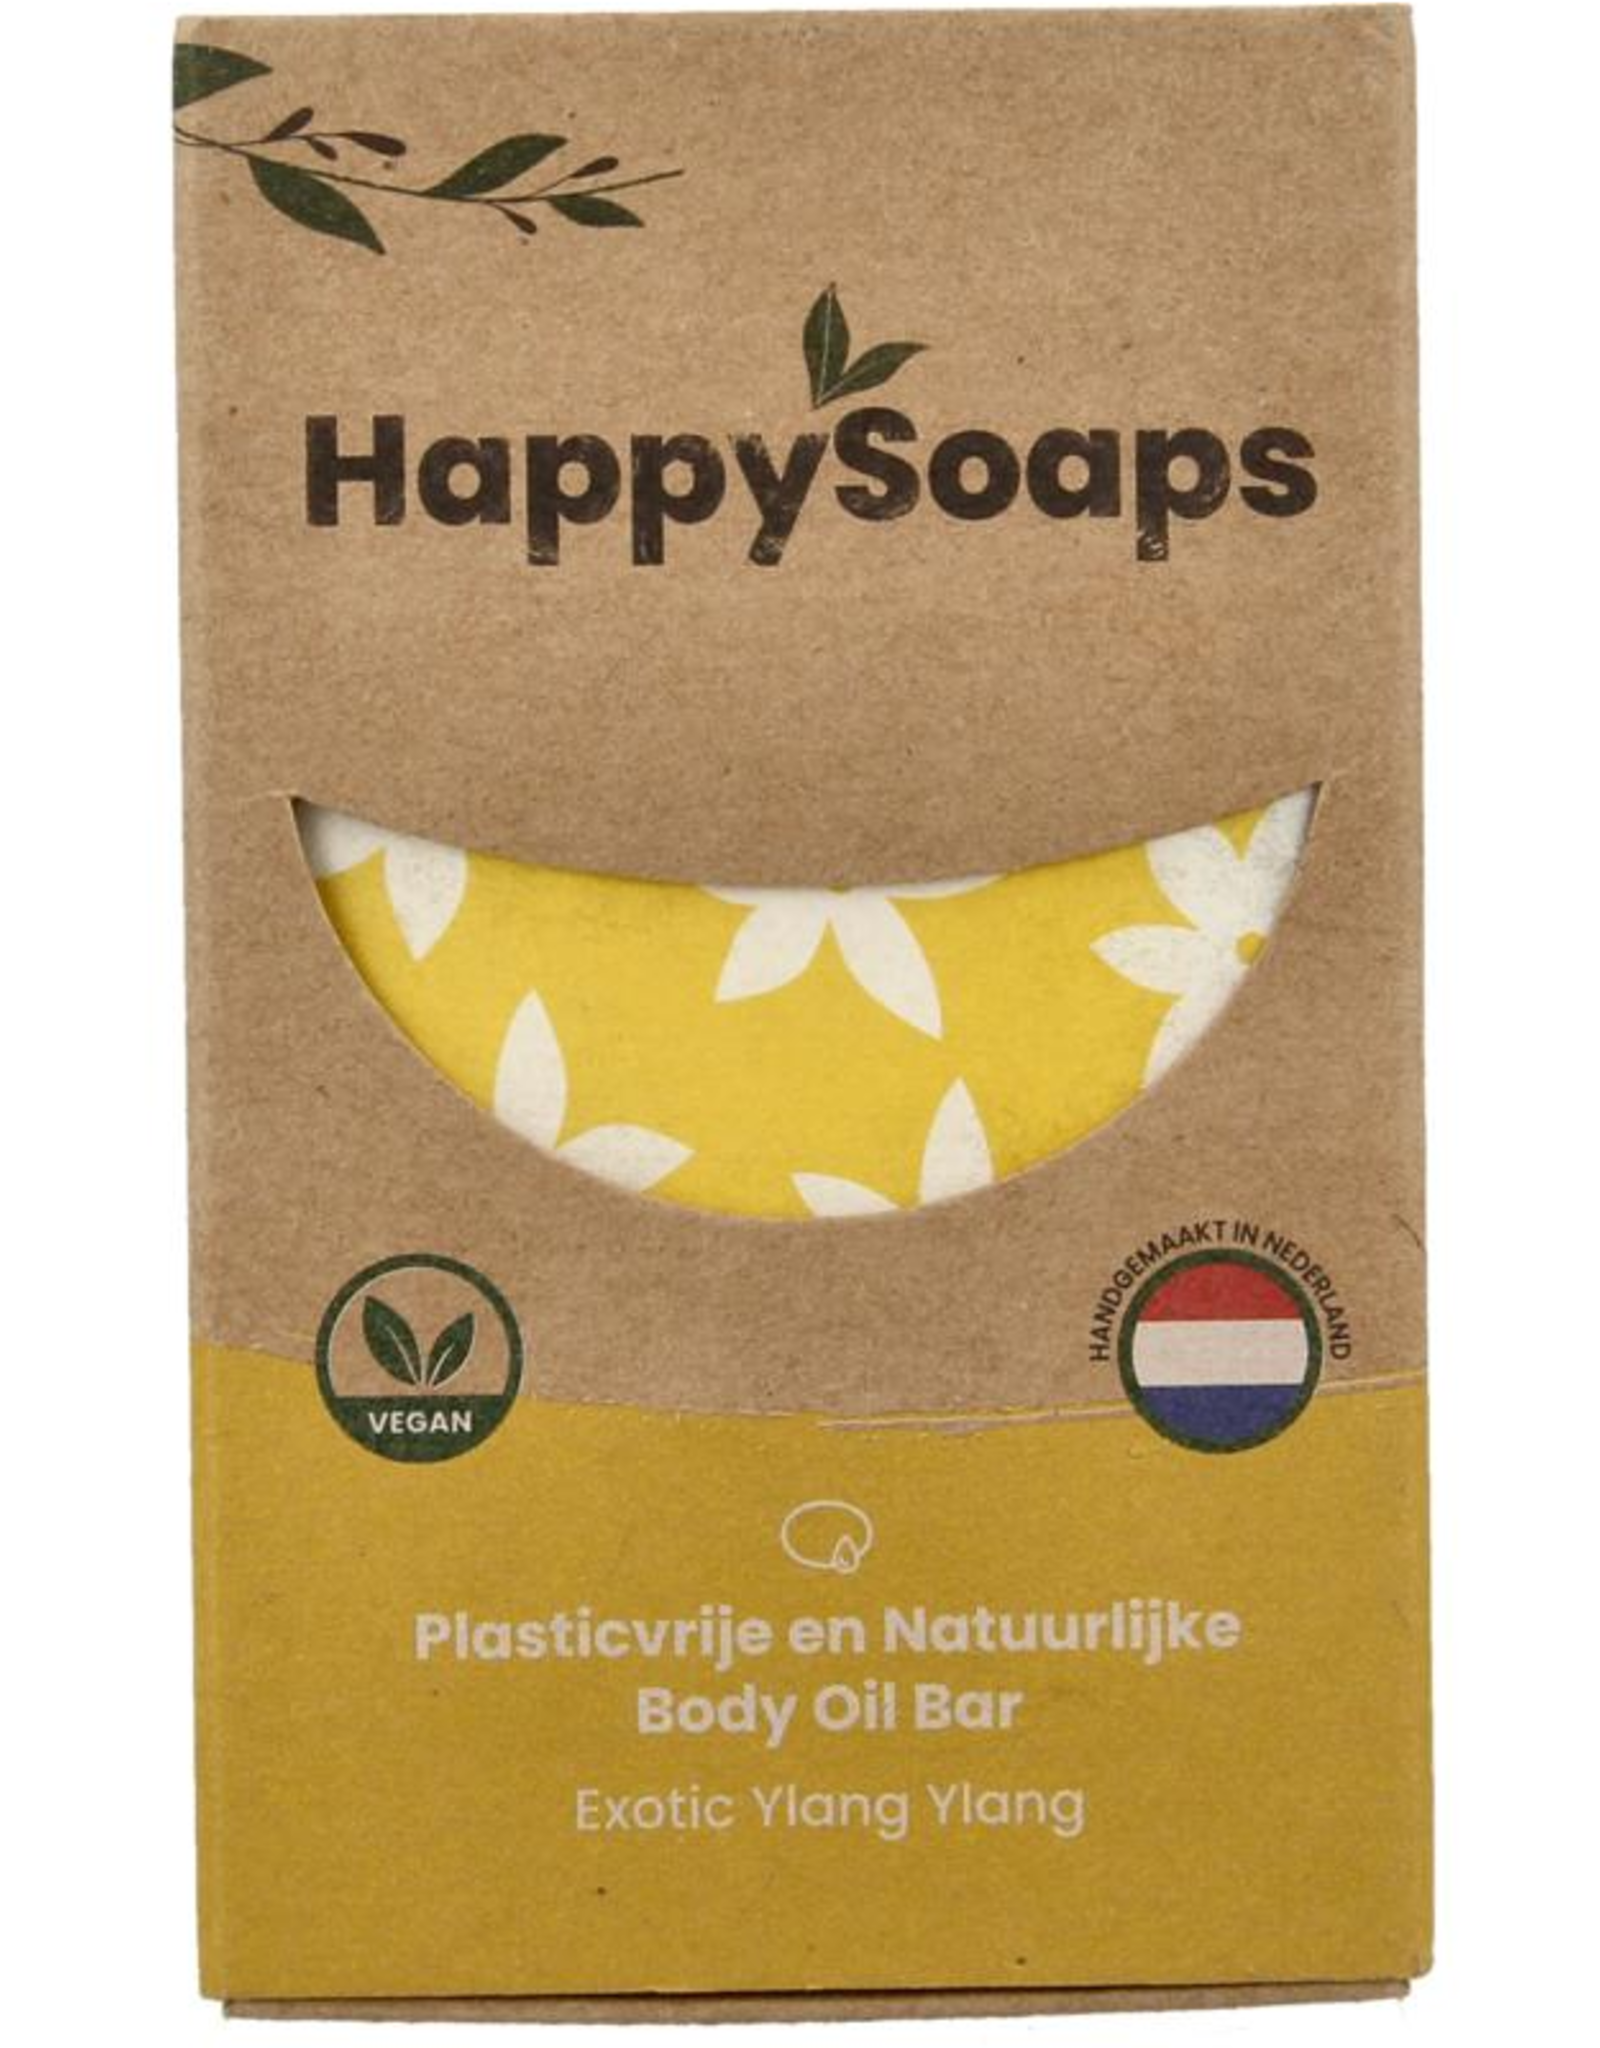 Happy Soaps Body oil bar exotic ylang ylang 70g